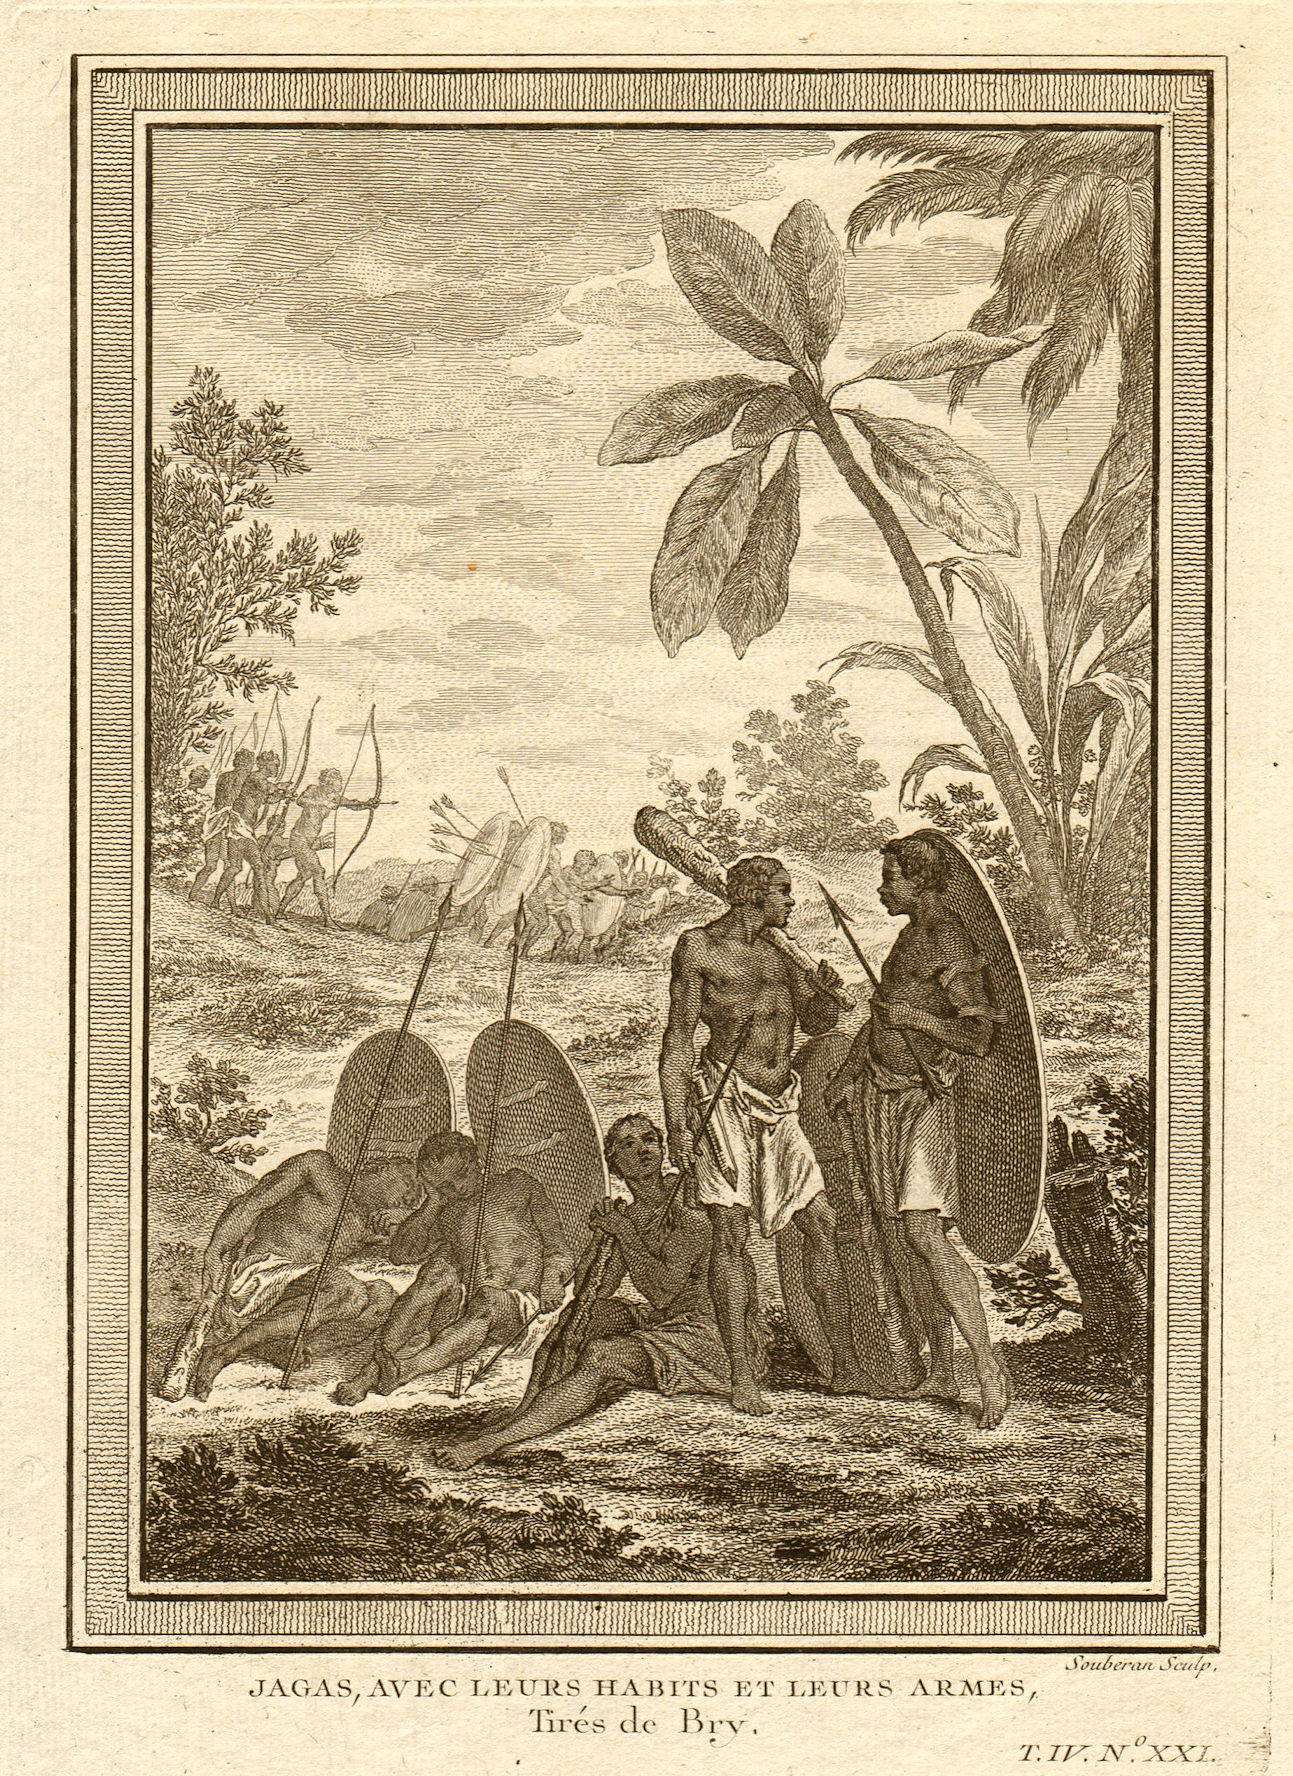 Associate Product 'Jagas avec leurs habits & leurs armes'. Congo. Jagas people with weapons 1747